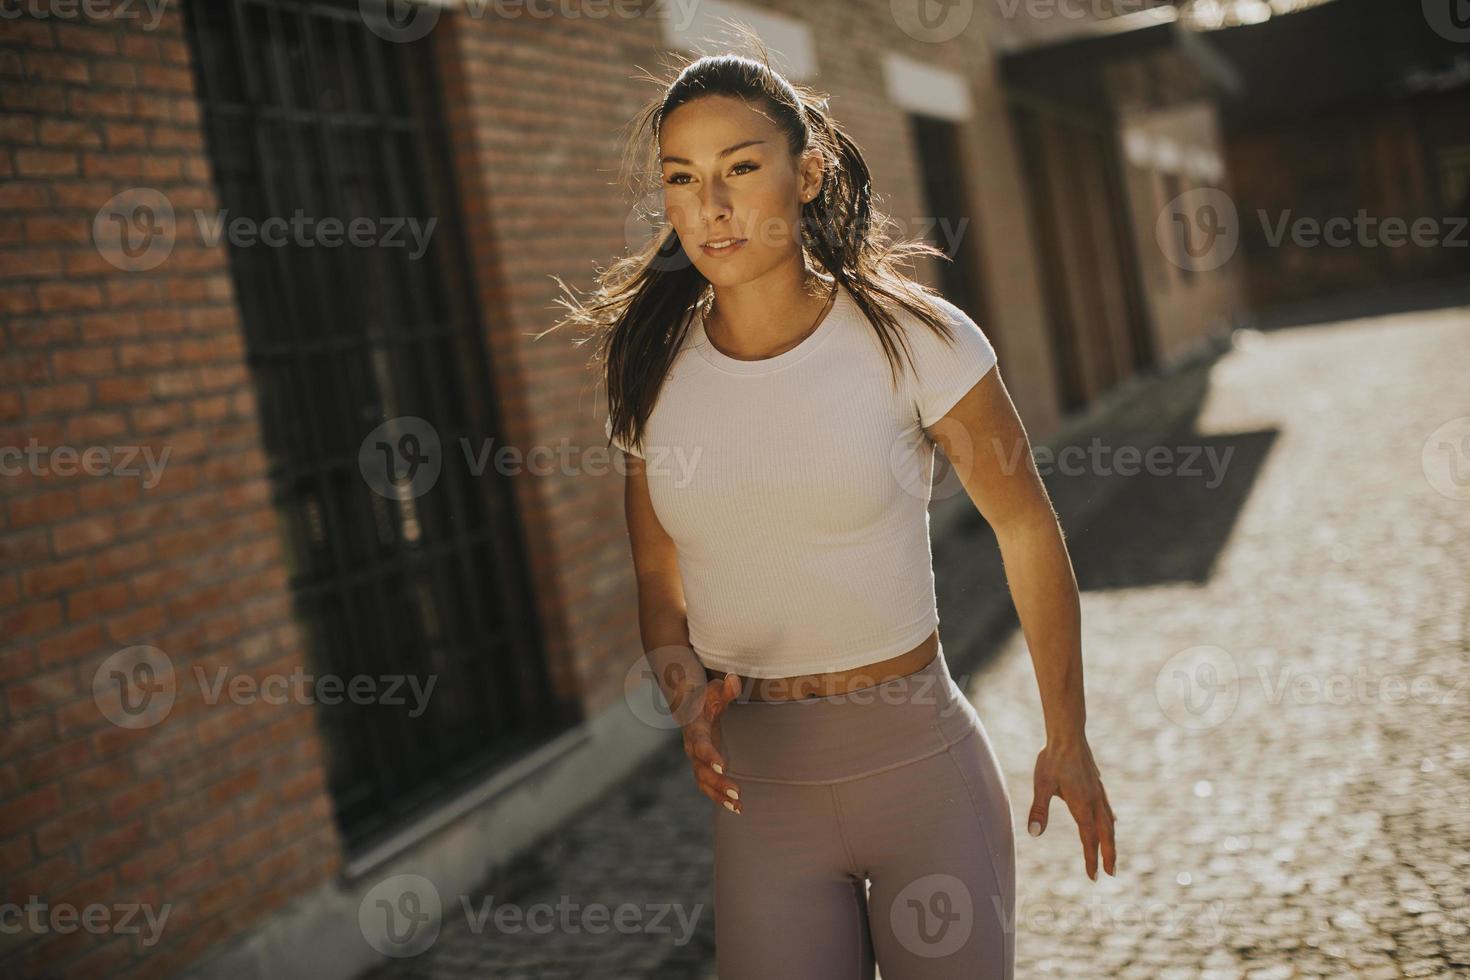 mujer joven corriendo en la calle foto